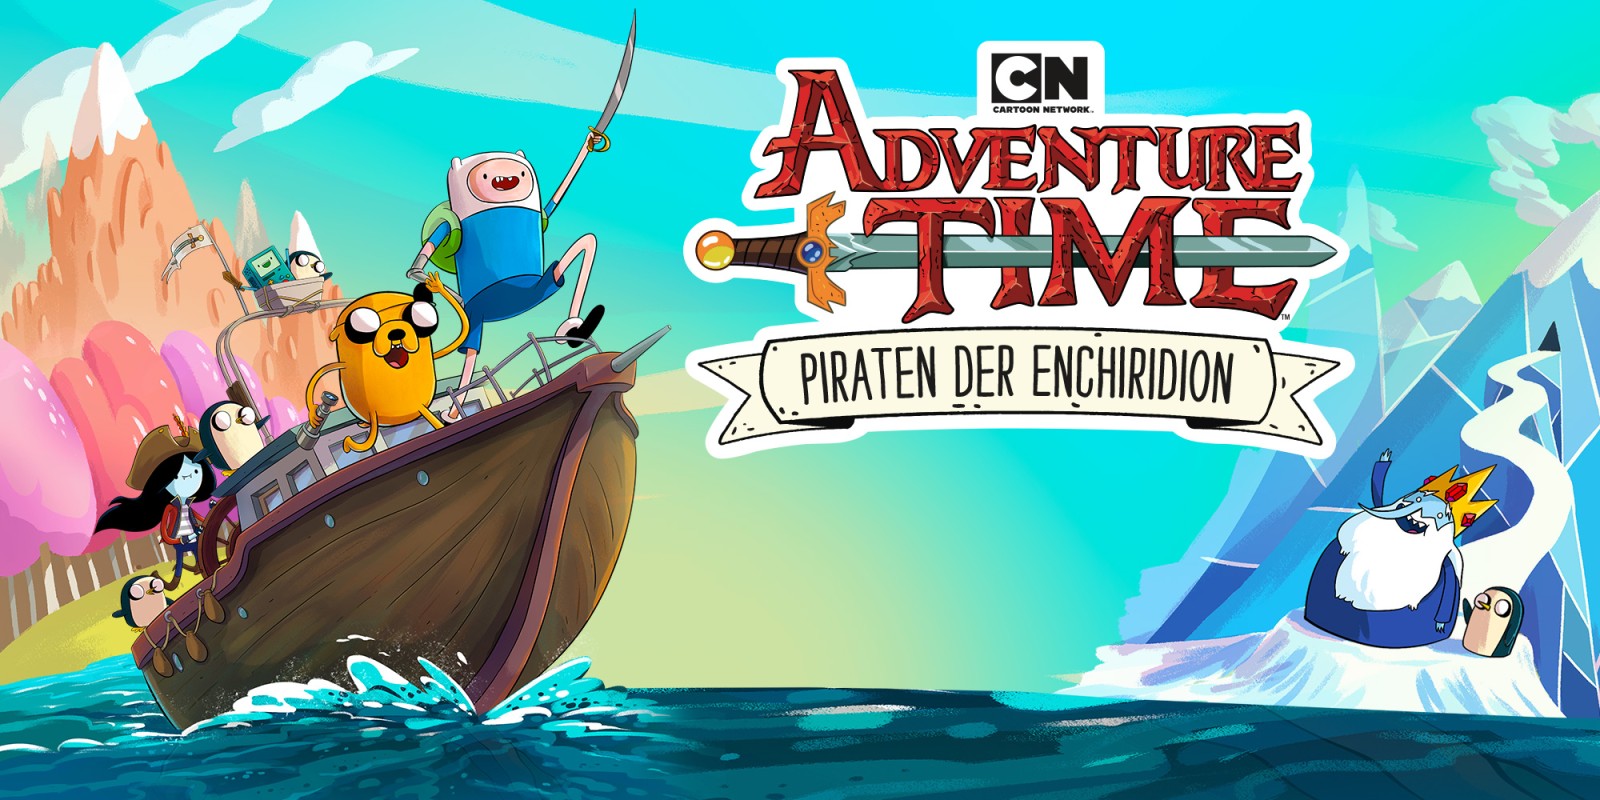 Cartoon Network Adventure Time: Piraten der Enchiridion